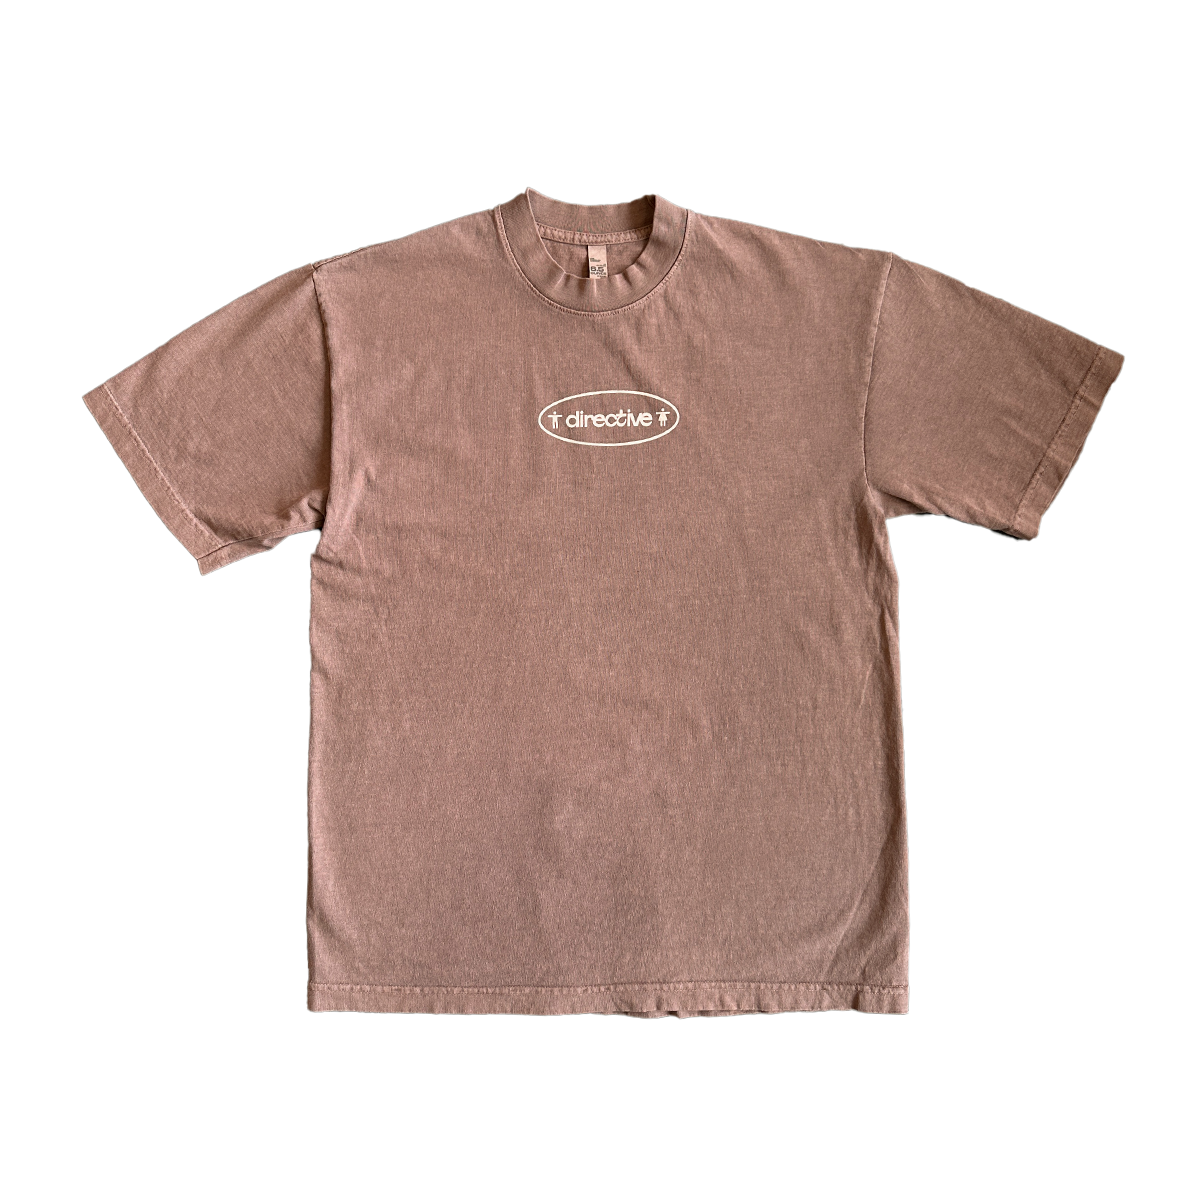 Directive Uniform T-Shirt - Patchouli